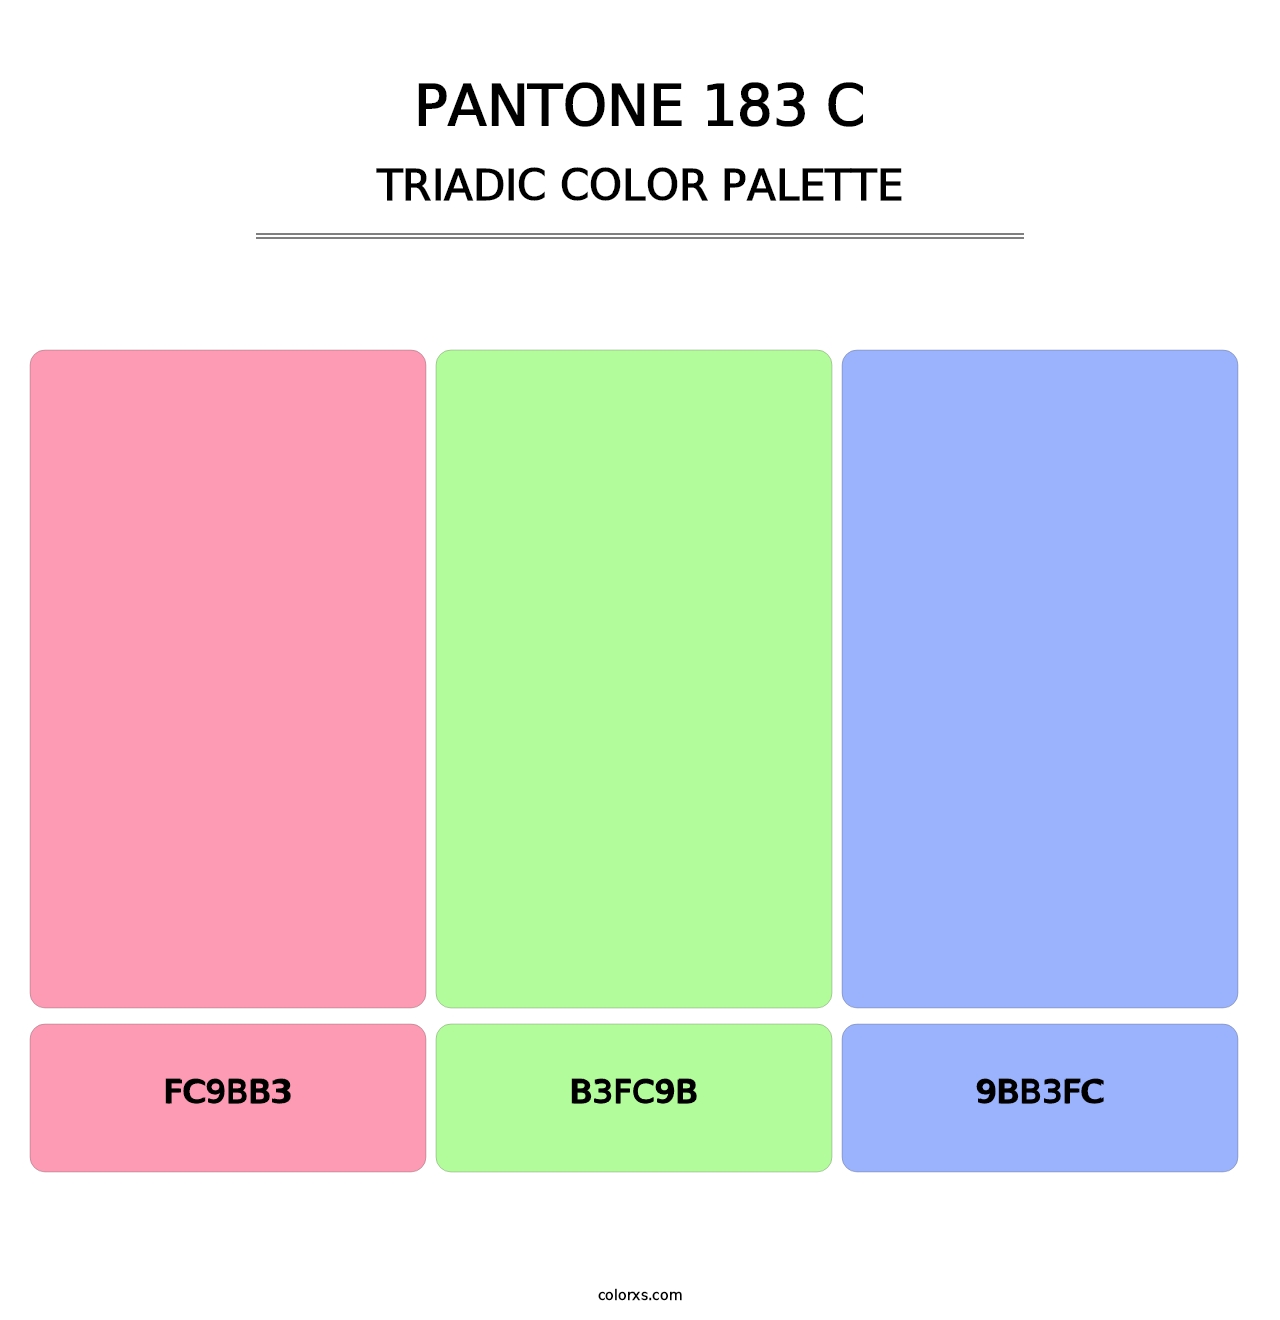 PANTONE 183 C - Triadic Color Palette